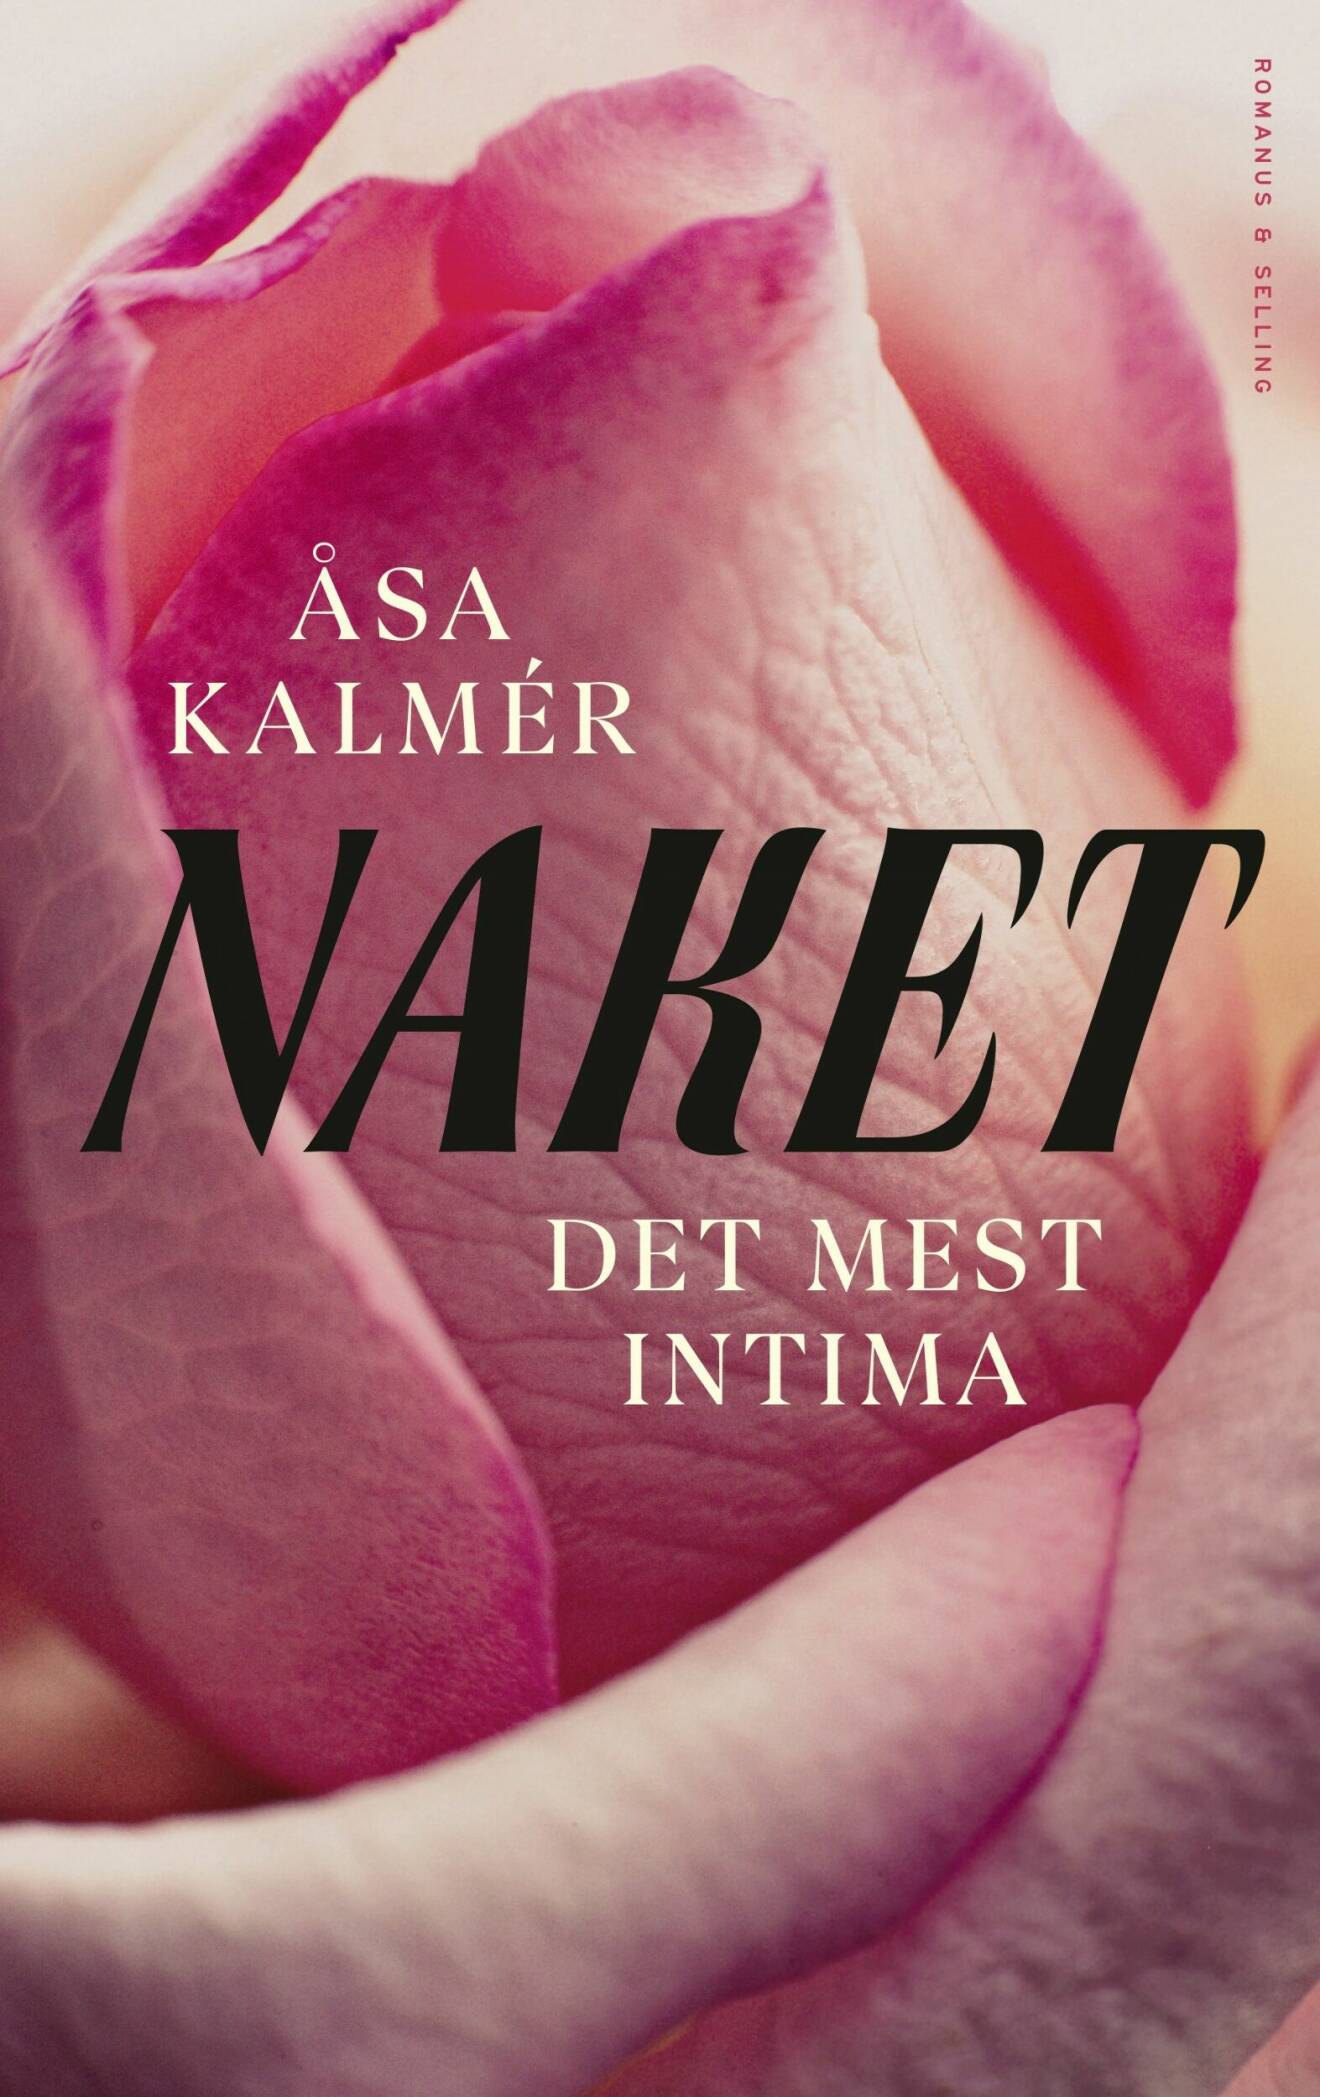 Naket Det mest intima av Åsa Kalmér.